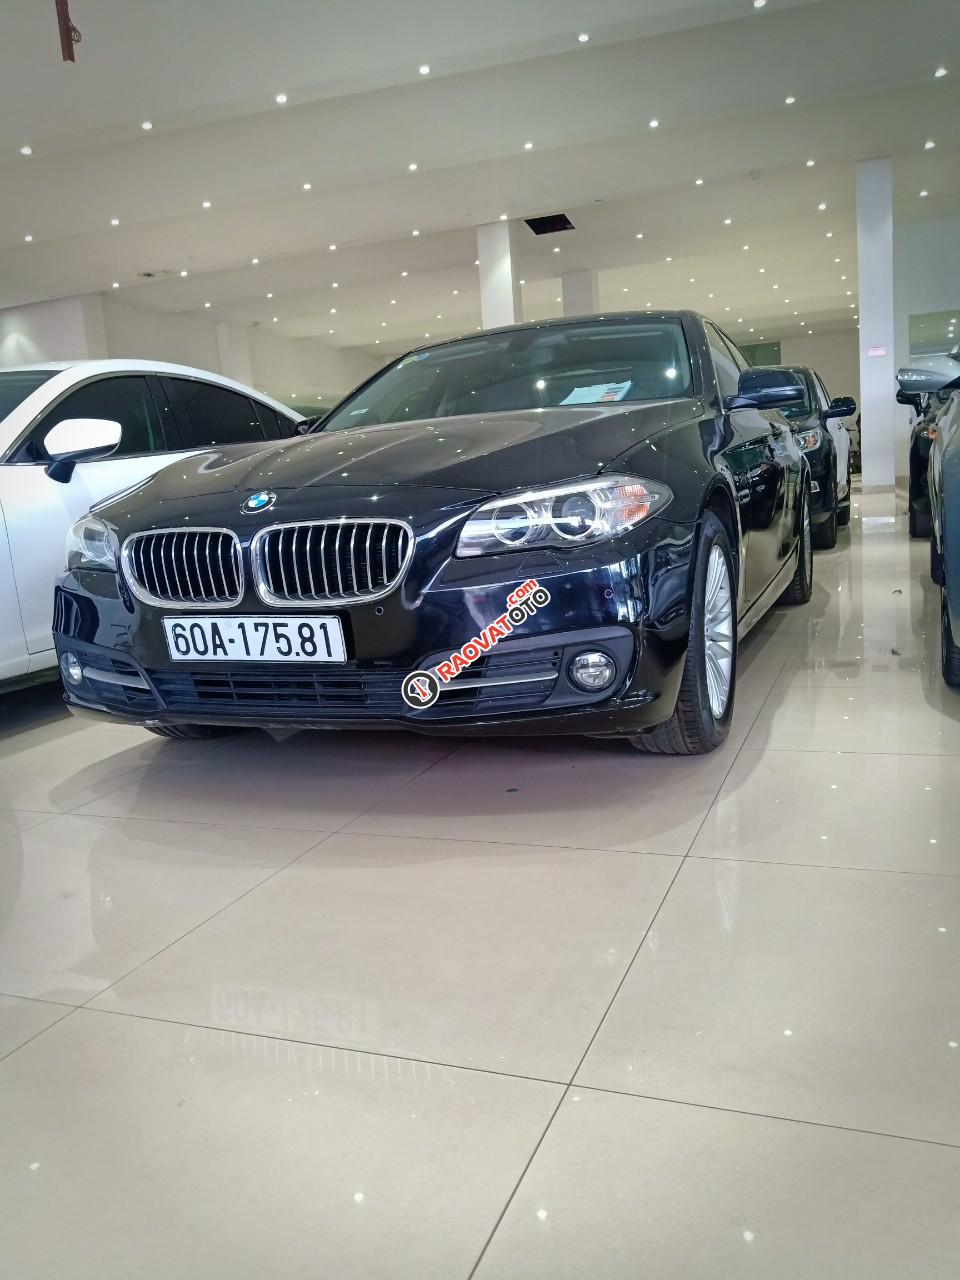 Cần bán BMW 520i đời 2014 2.0 AT xe nhập khẩu nguyên chiếc tại Đức, odo: 53.000 km, màu đen, xe đẹp-6